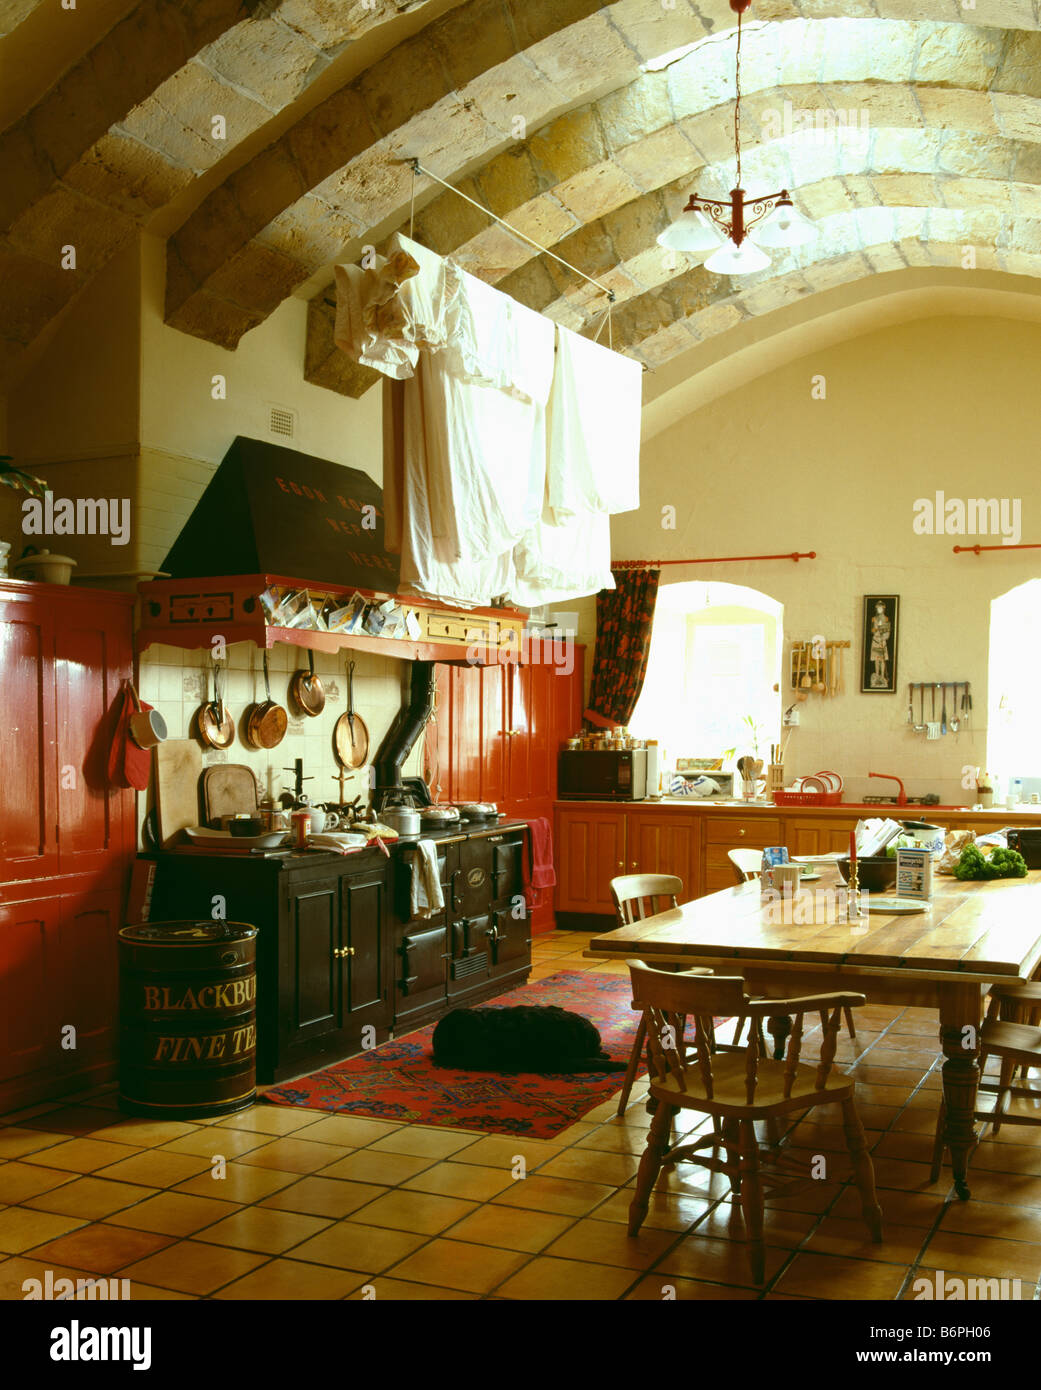 Blätter trocknen auf lüften Rack über schwarze Aga-Ofen im großen Keller Küche mit Holztisch und gewölbte Decke Stockfoto